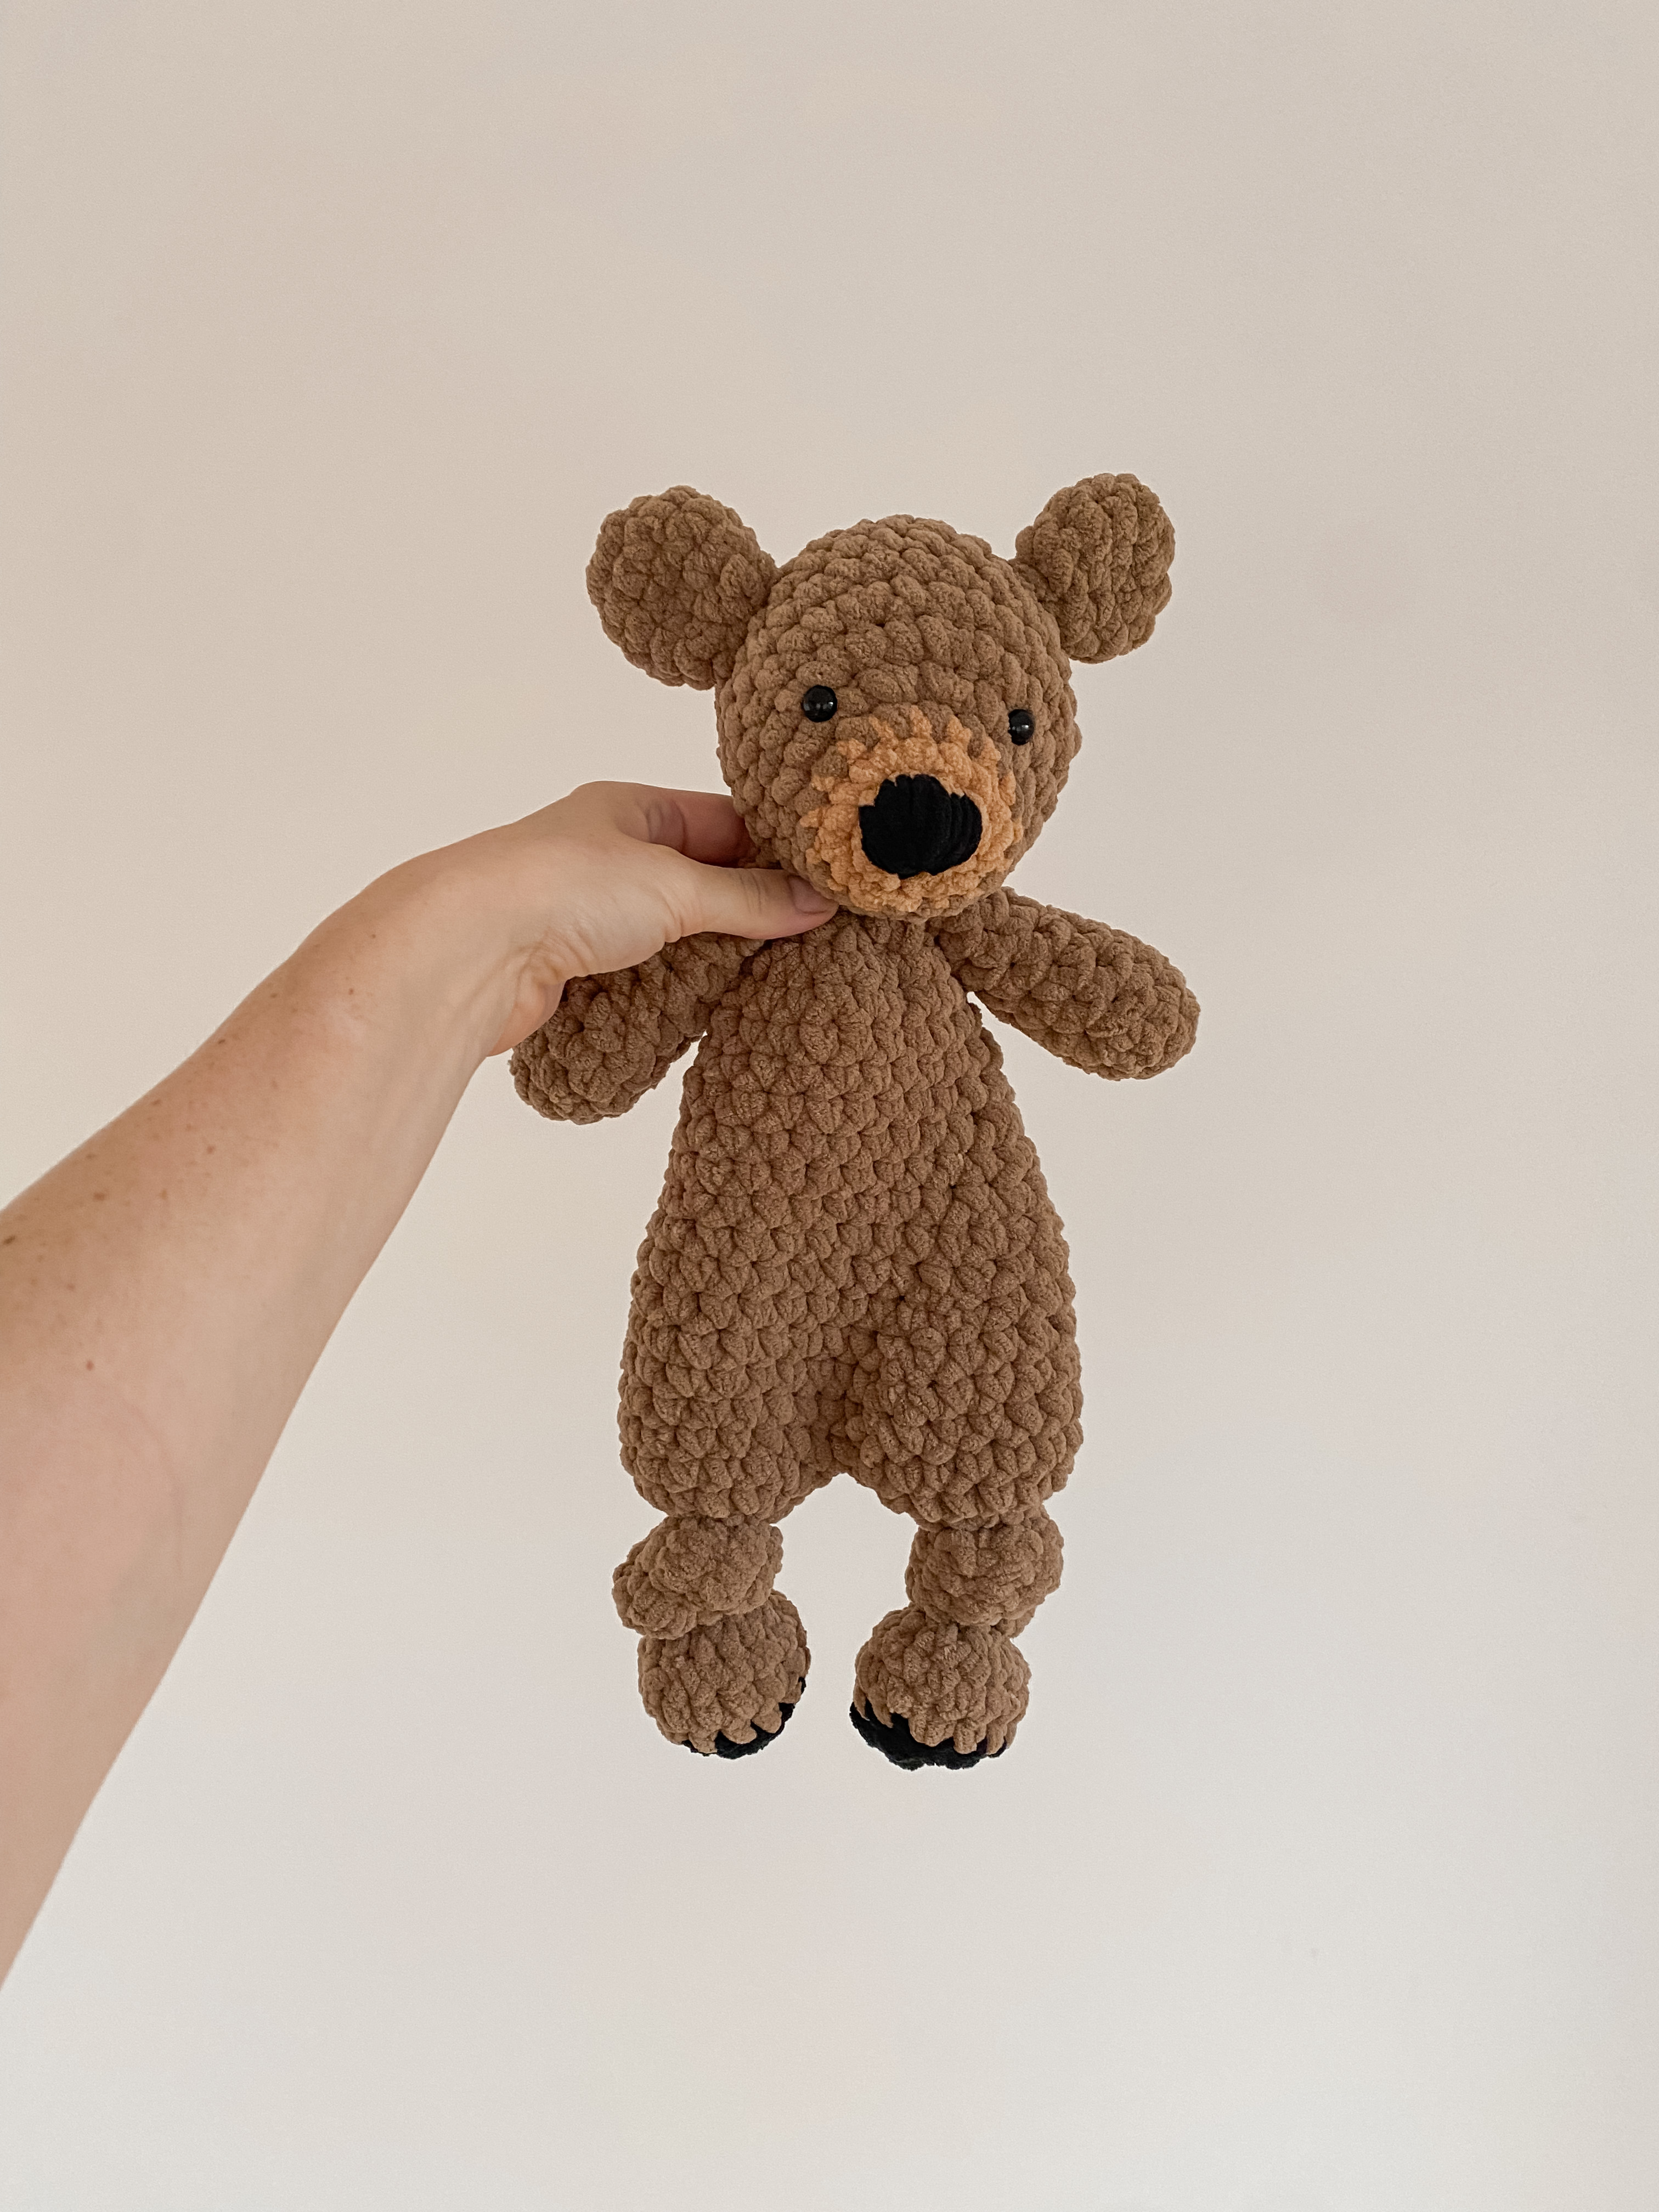 Cool Free Amigurumi Teddy Bear Pattern for 2020 - Amigurumiforum